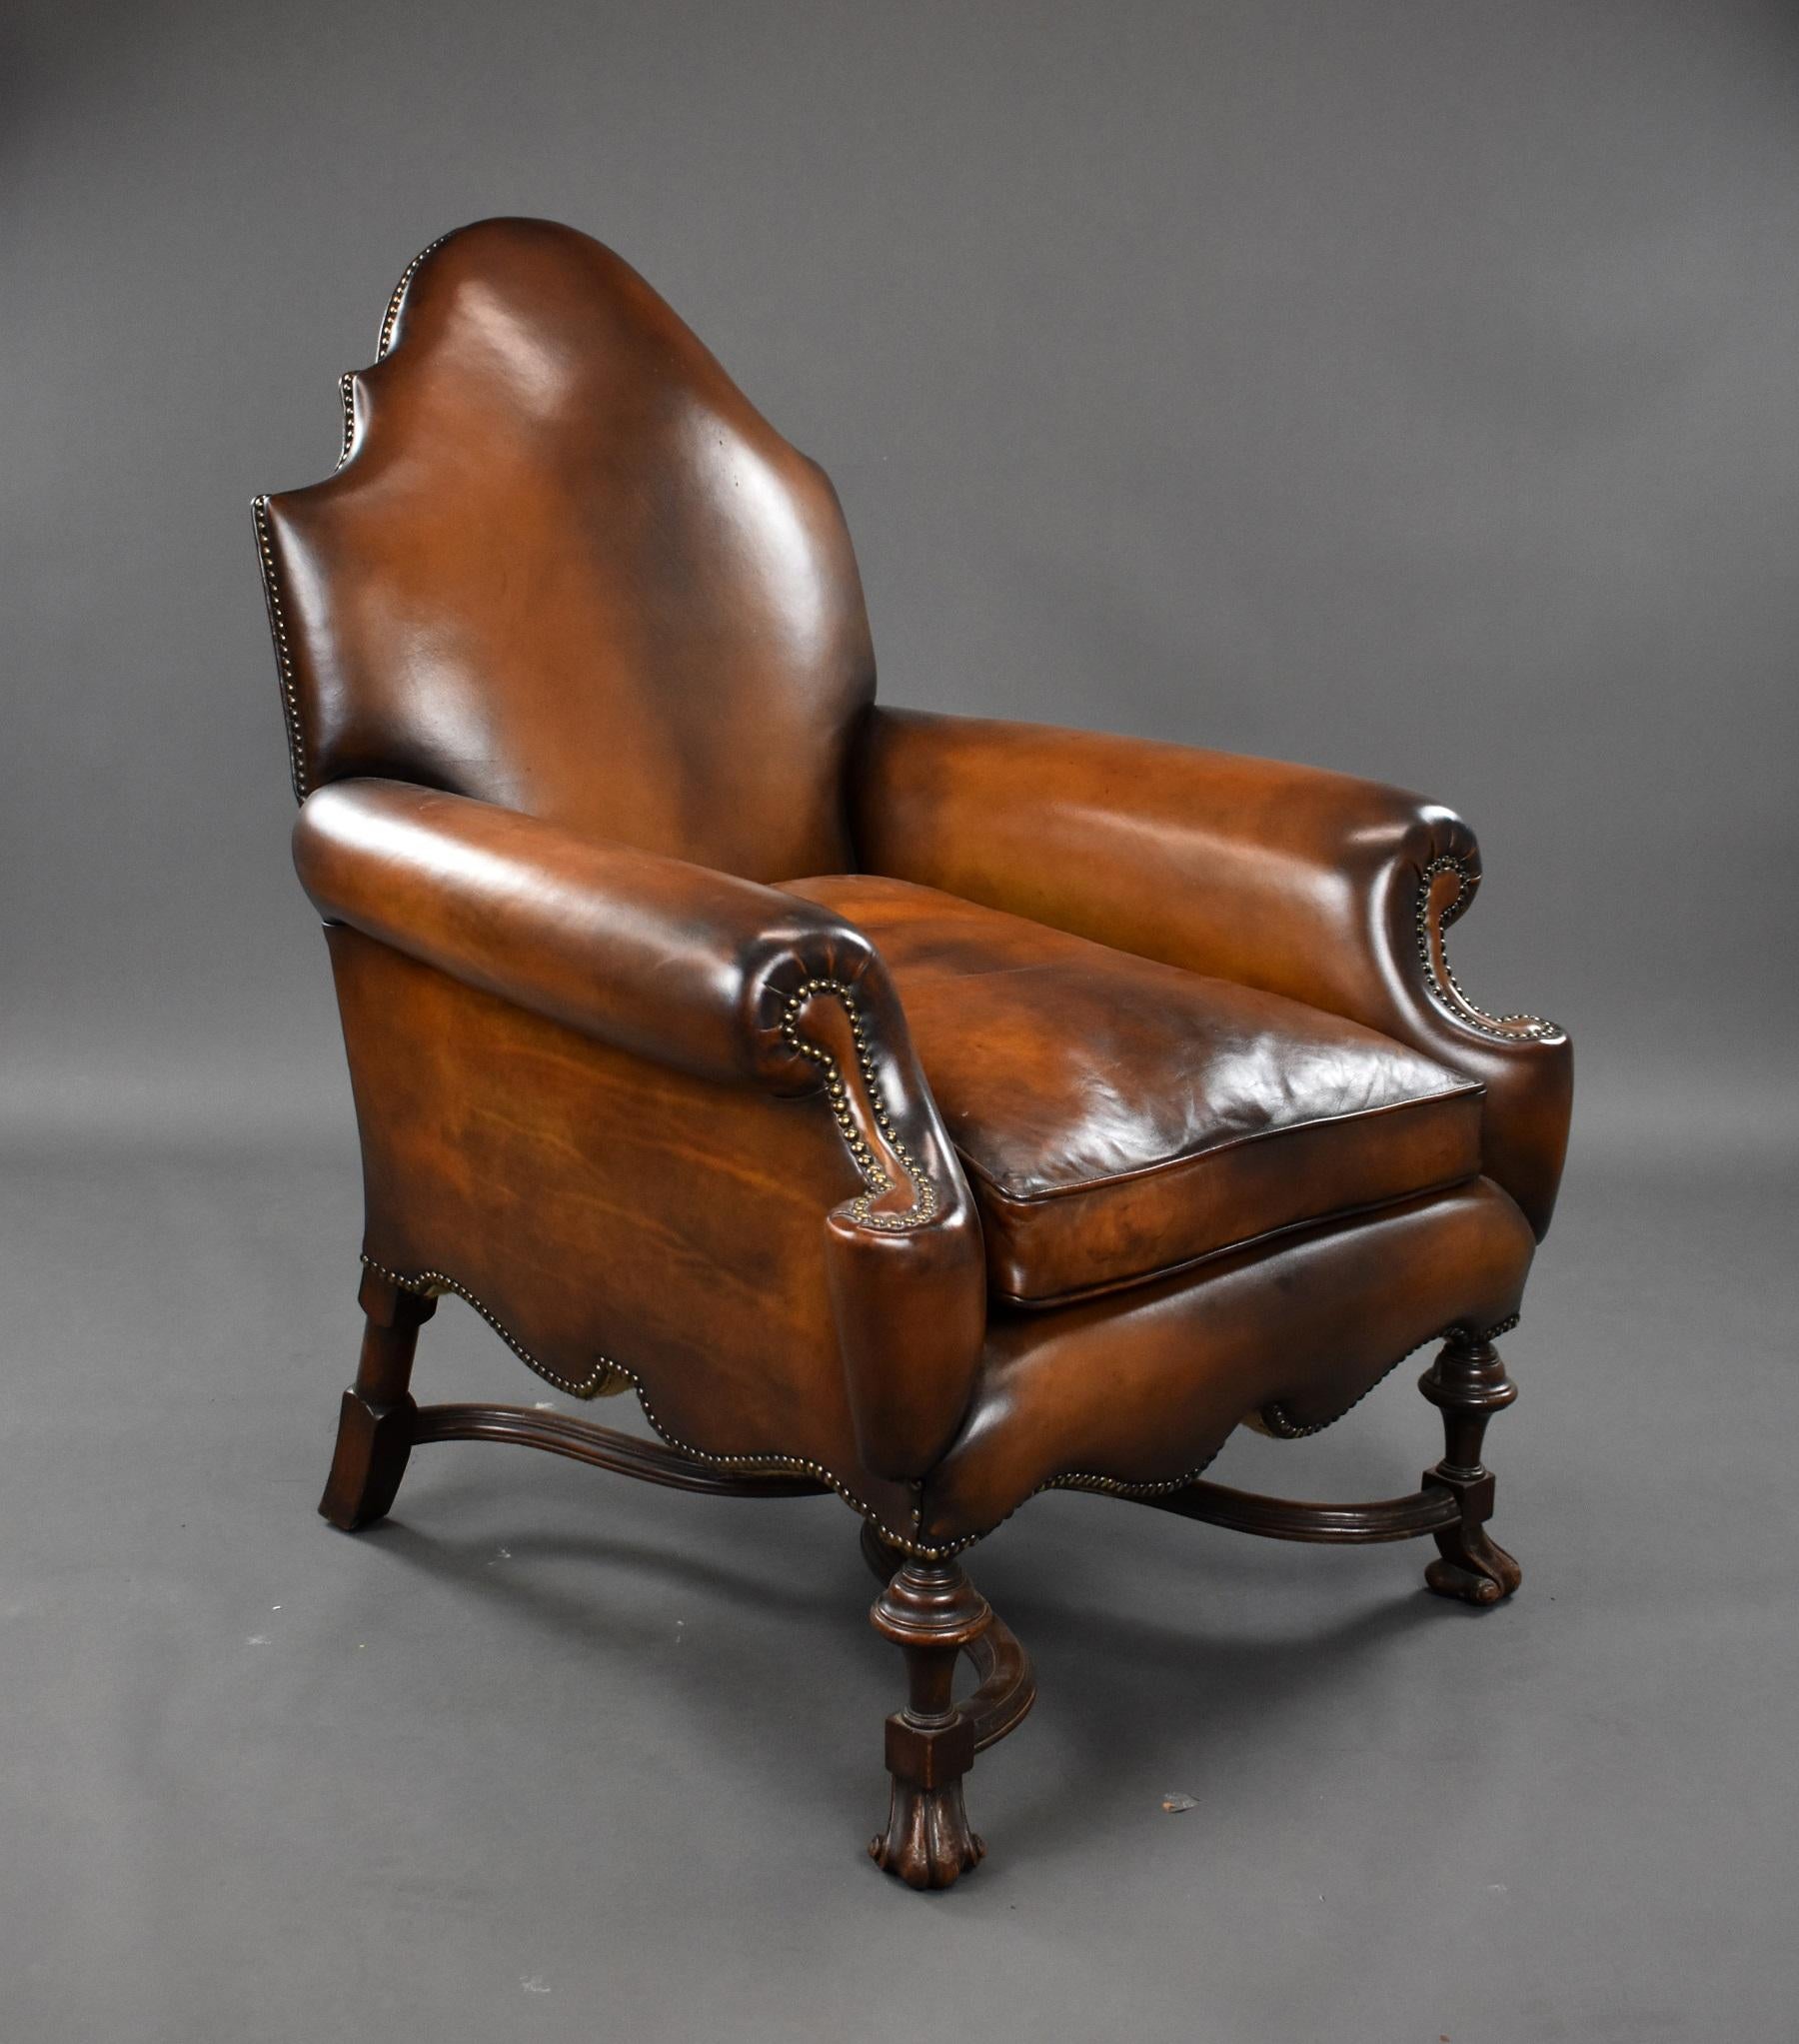 A vendre, un fauteuil victorien de qualité en cuir avec un cadre en noyer. Avec un dossier et des accoudoirs joliment formés, la chaise repose sur des pieds sculptés unis par un brancard façonné avec un fleuron au centre. La chaise est en excellent